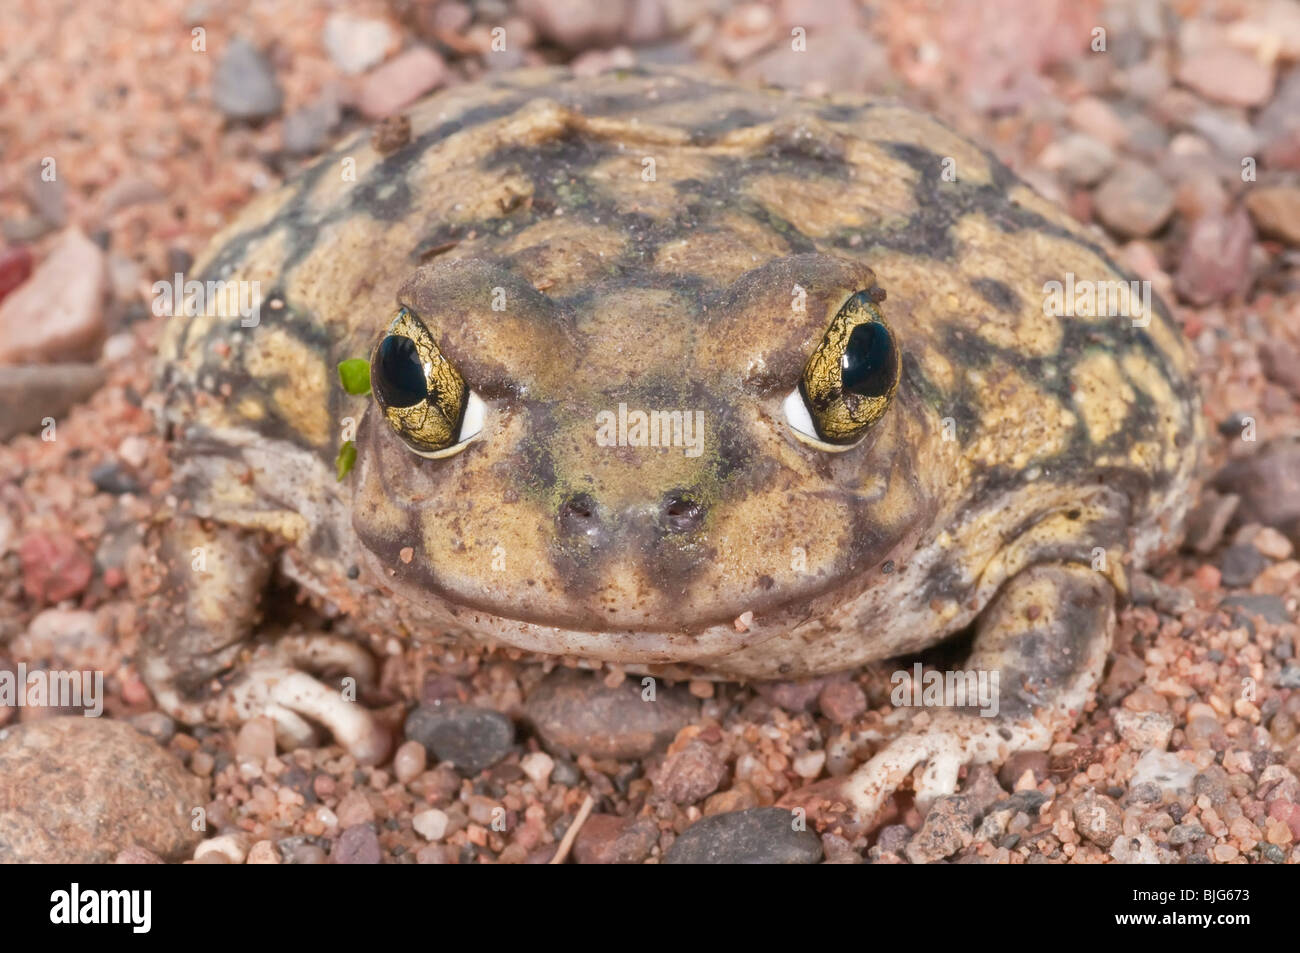 La camilla, Scaphiopus couchii spadefoot toad, es nativa del suroeste de los Estados Unidos, norte de México y de la península de Baja California Foto de stock